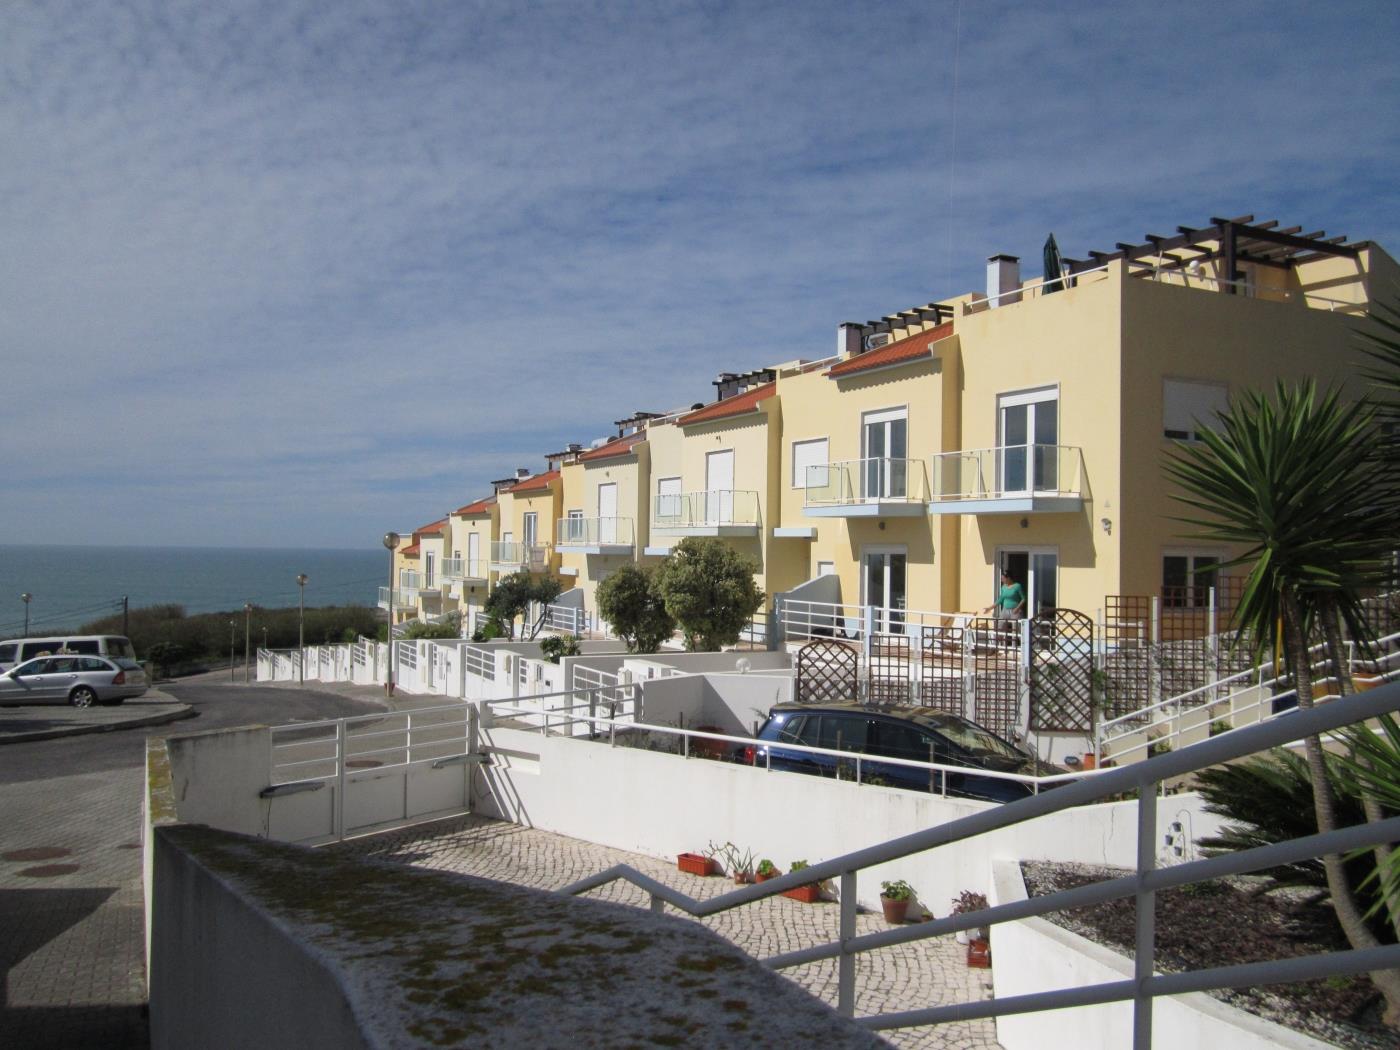 Casa Elsa's Seaside Terrace in Atalaia